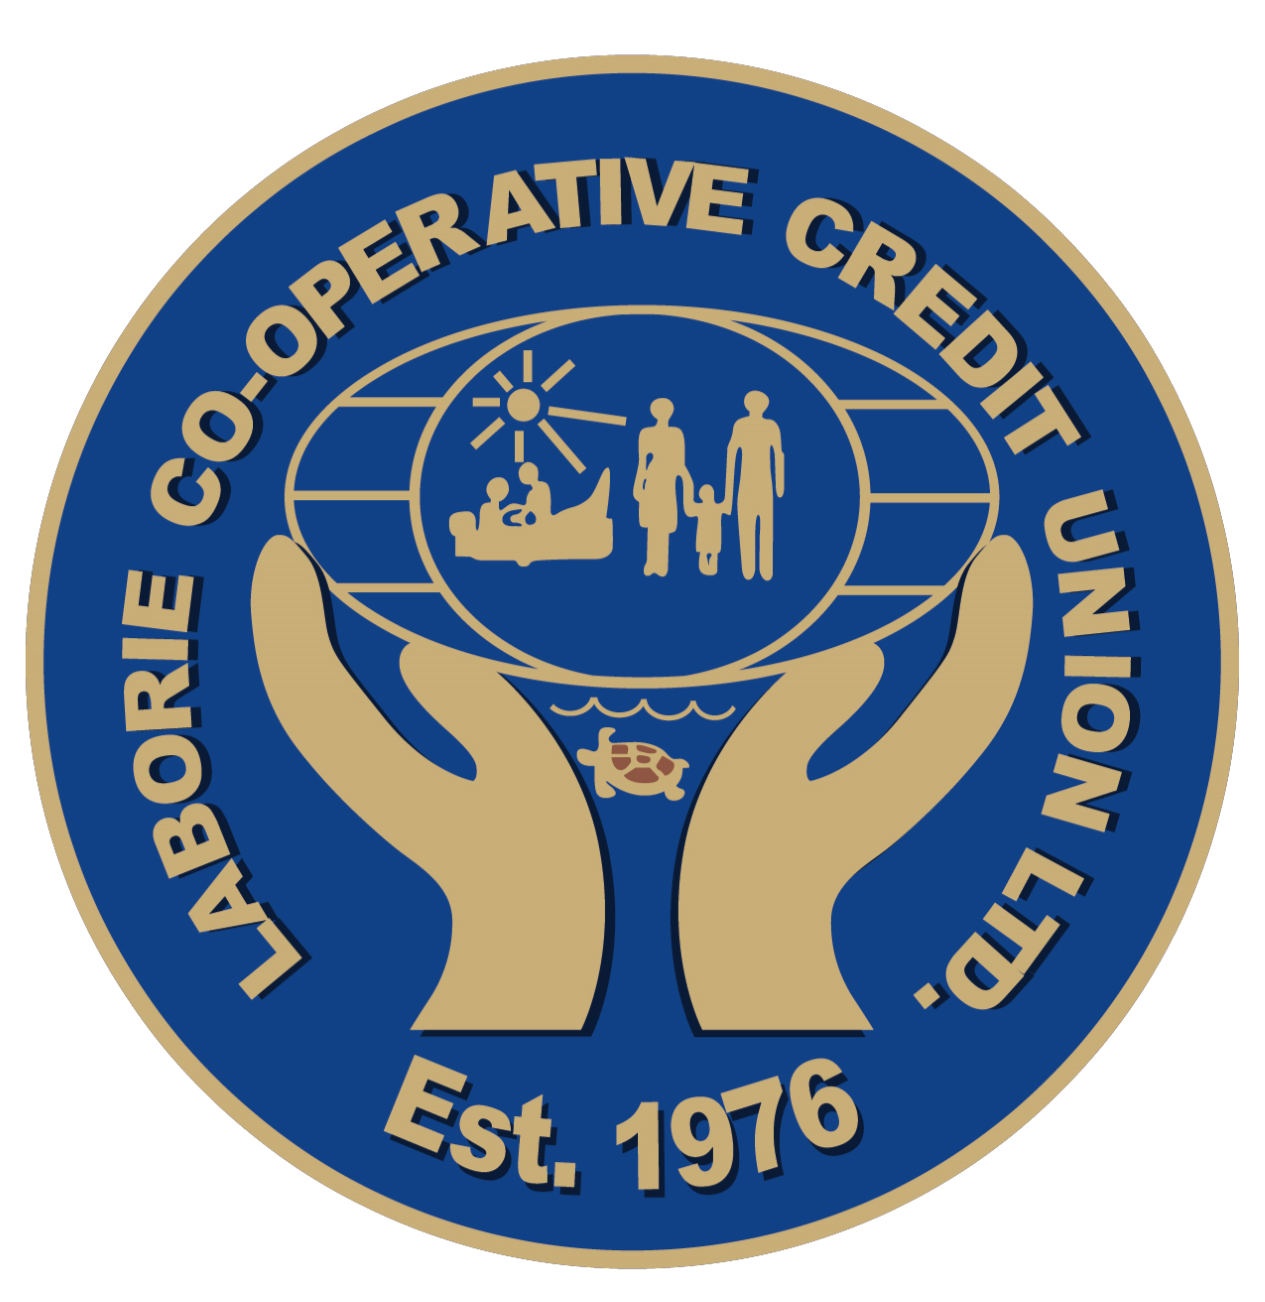 Laborie Co-Operative Credit Union Ltd.